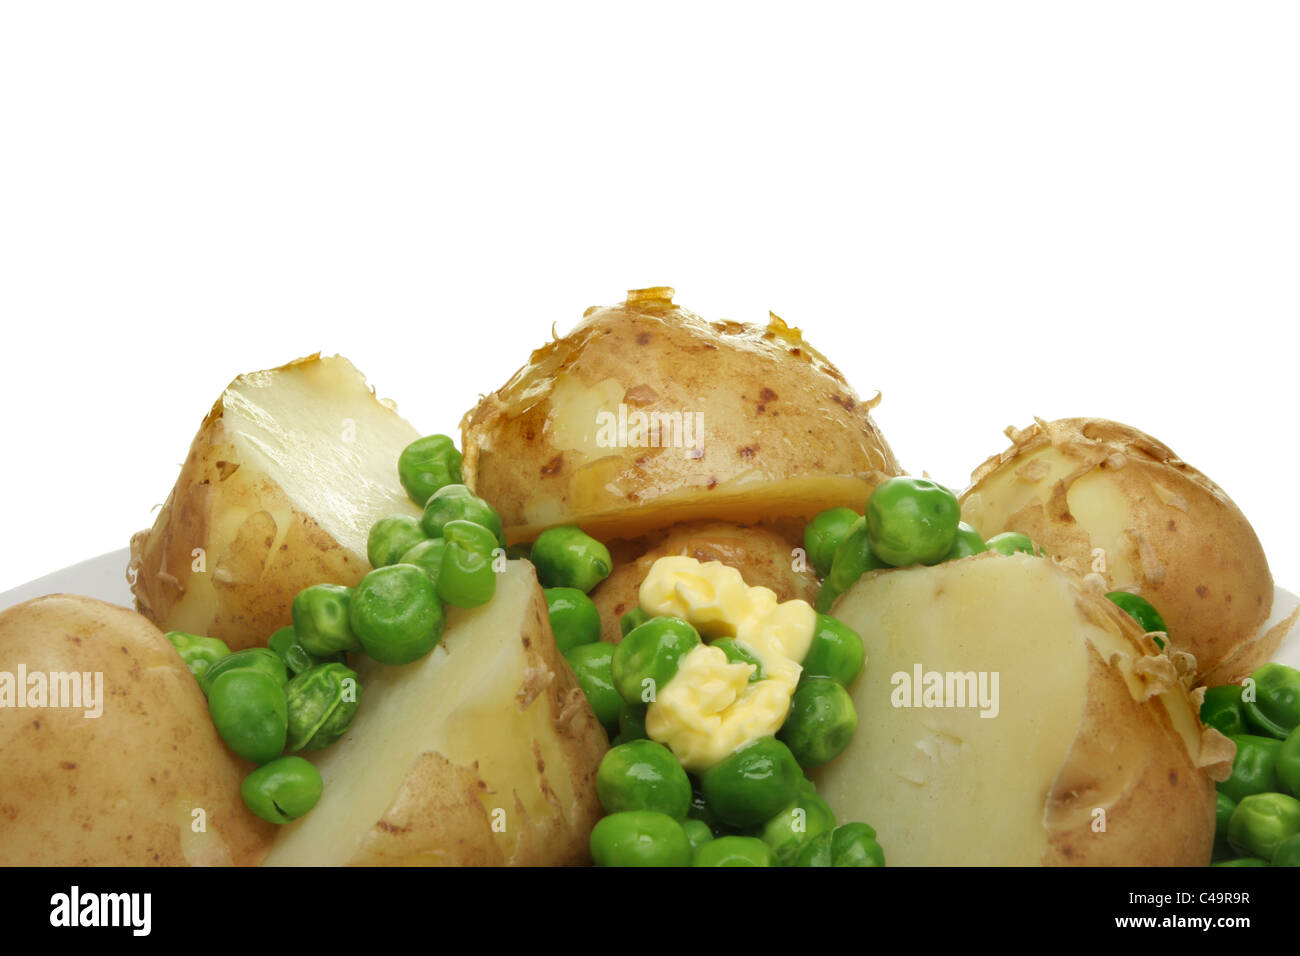 Nahaufnahme von gekochten neuen Kartoffeln und Erbsen mit einem Stückchen Butter schmelzen Stockfoto